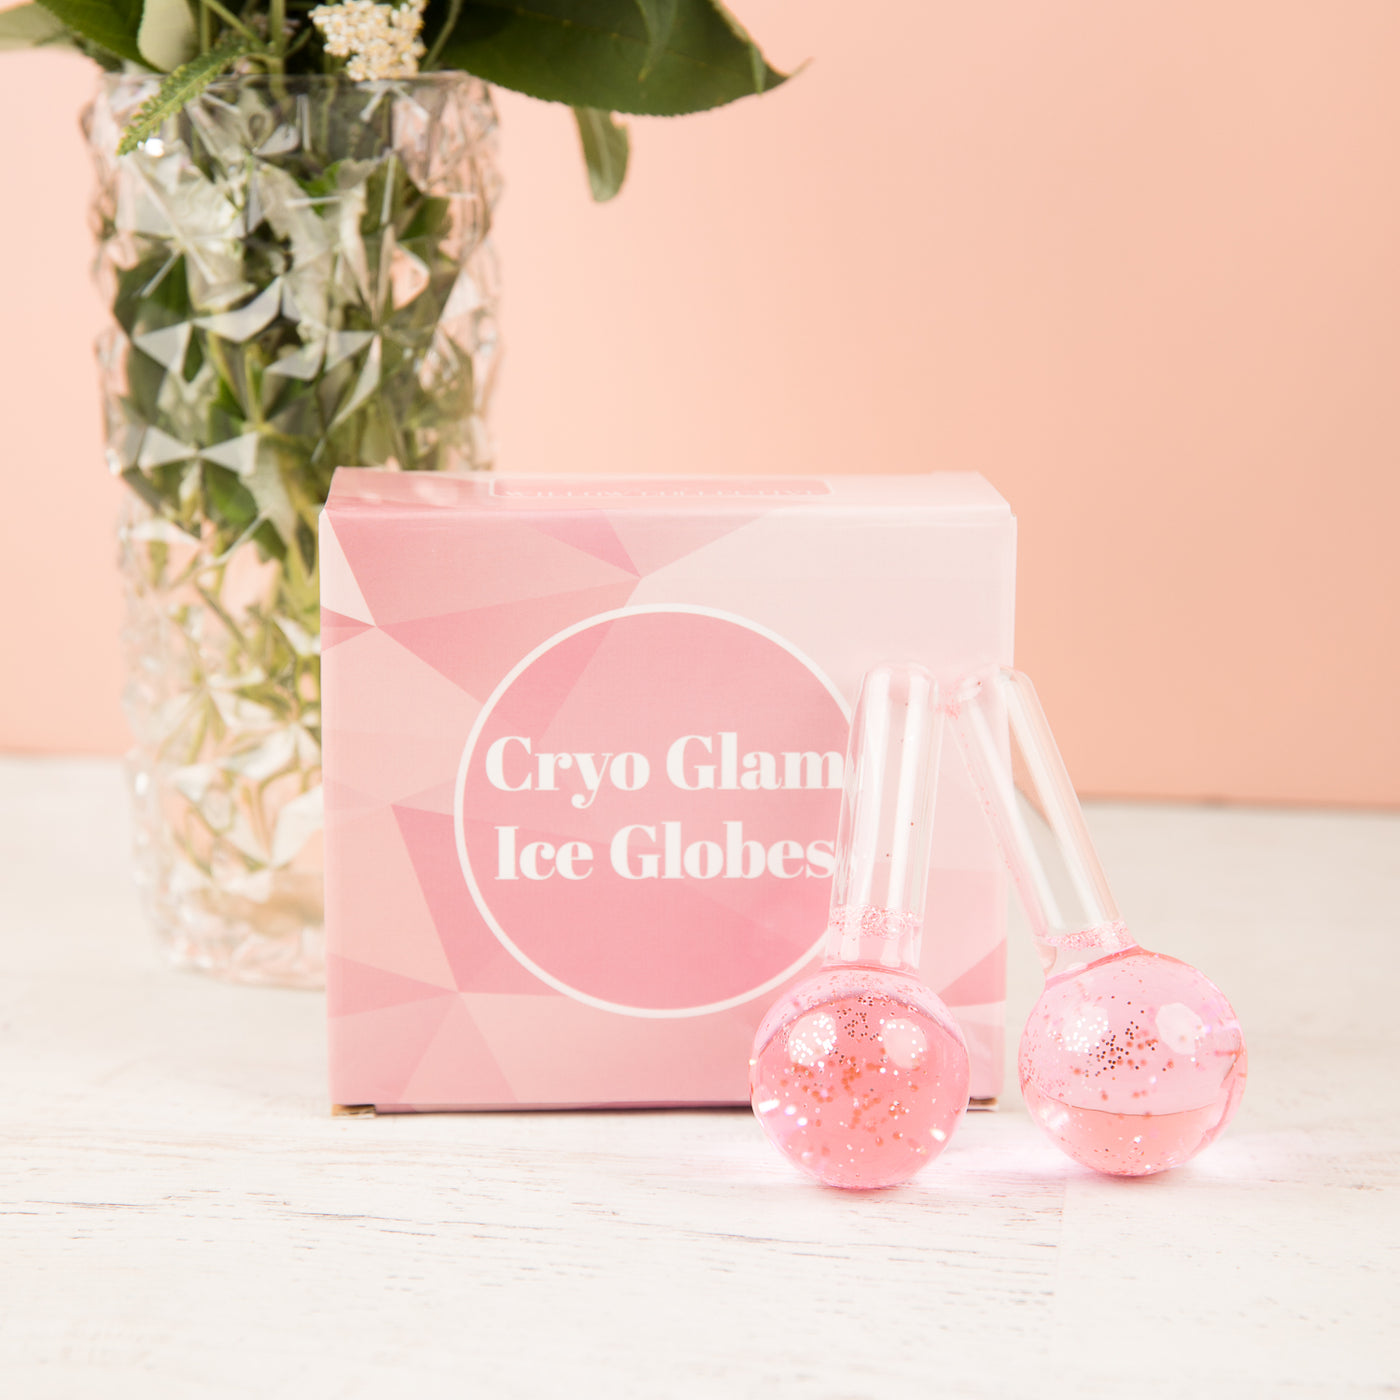 Cryo Glam Lee Globes